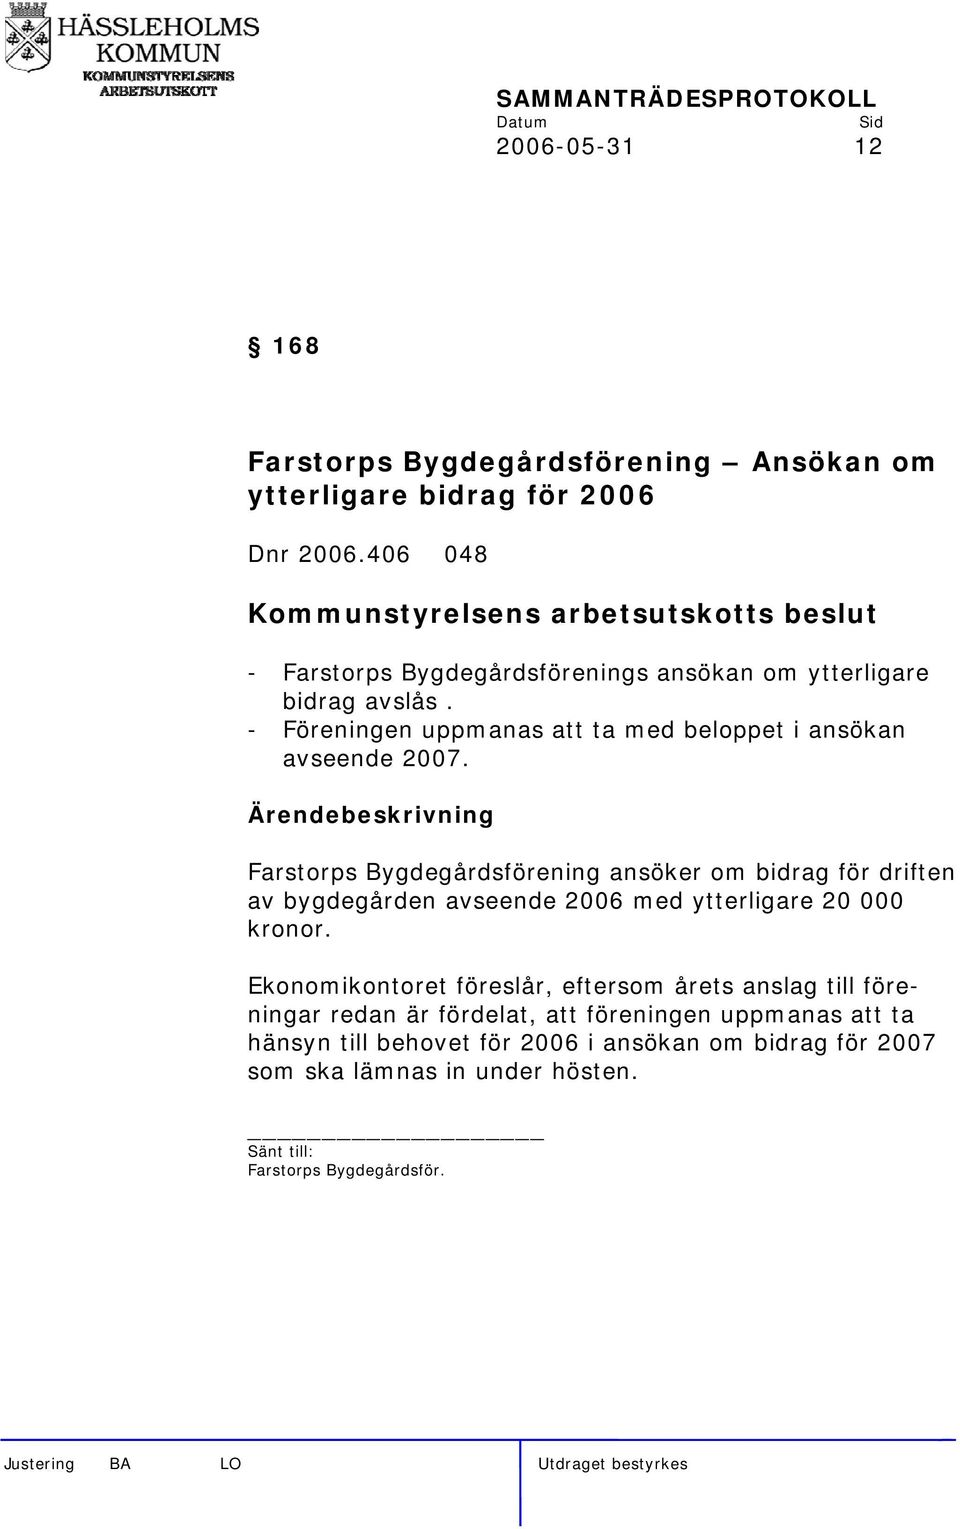 Farstorps Bygdegårdsförening ansöker om bidrag för driften av bygdegården avseende 2006 med ytterligare 20 000 kronor.